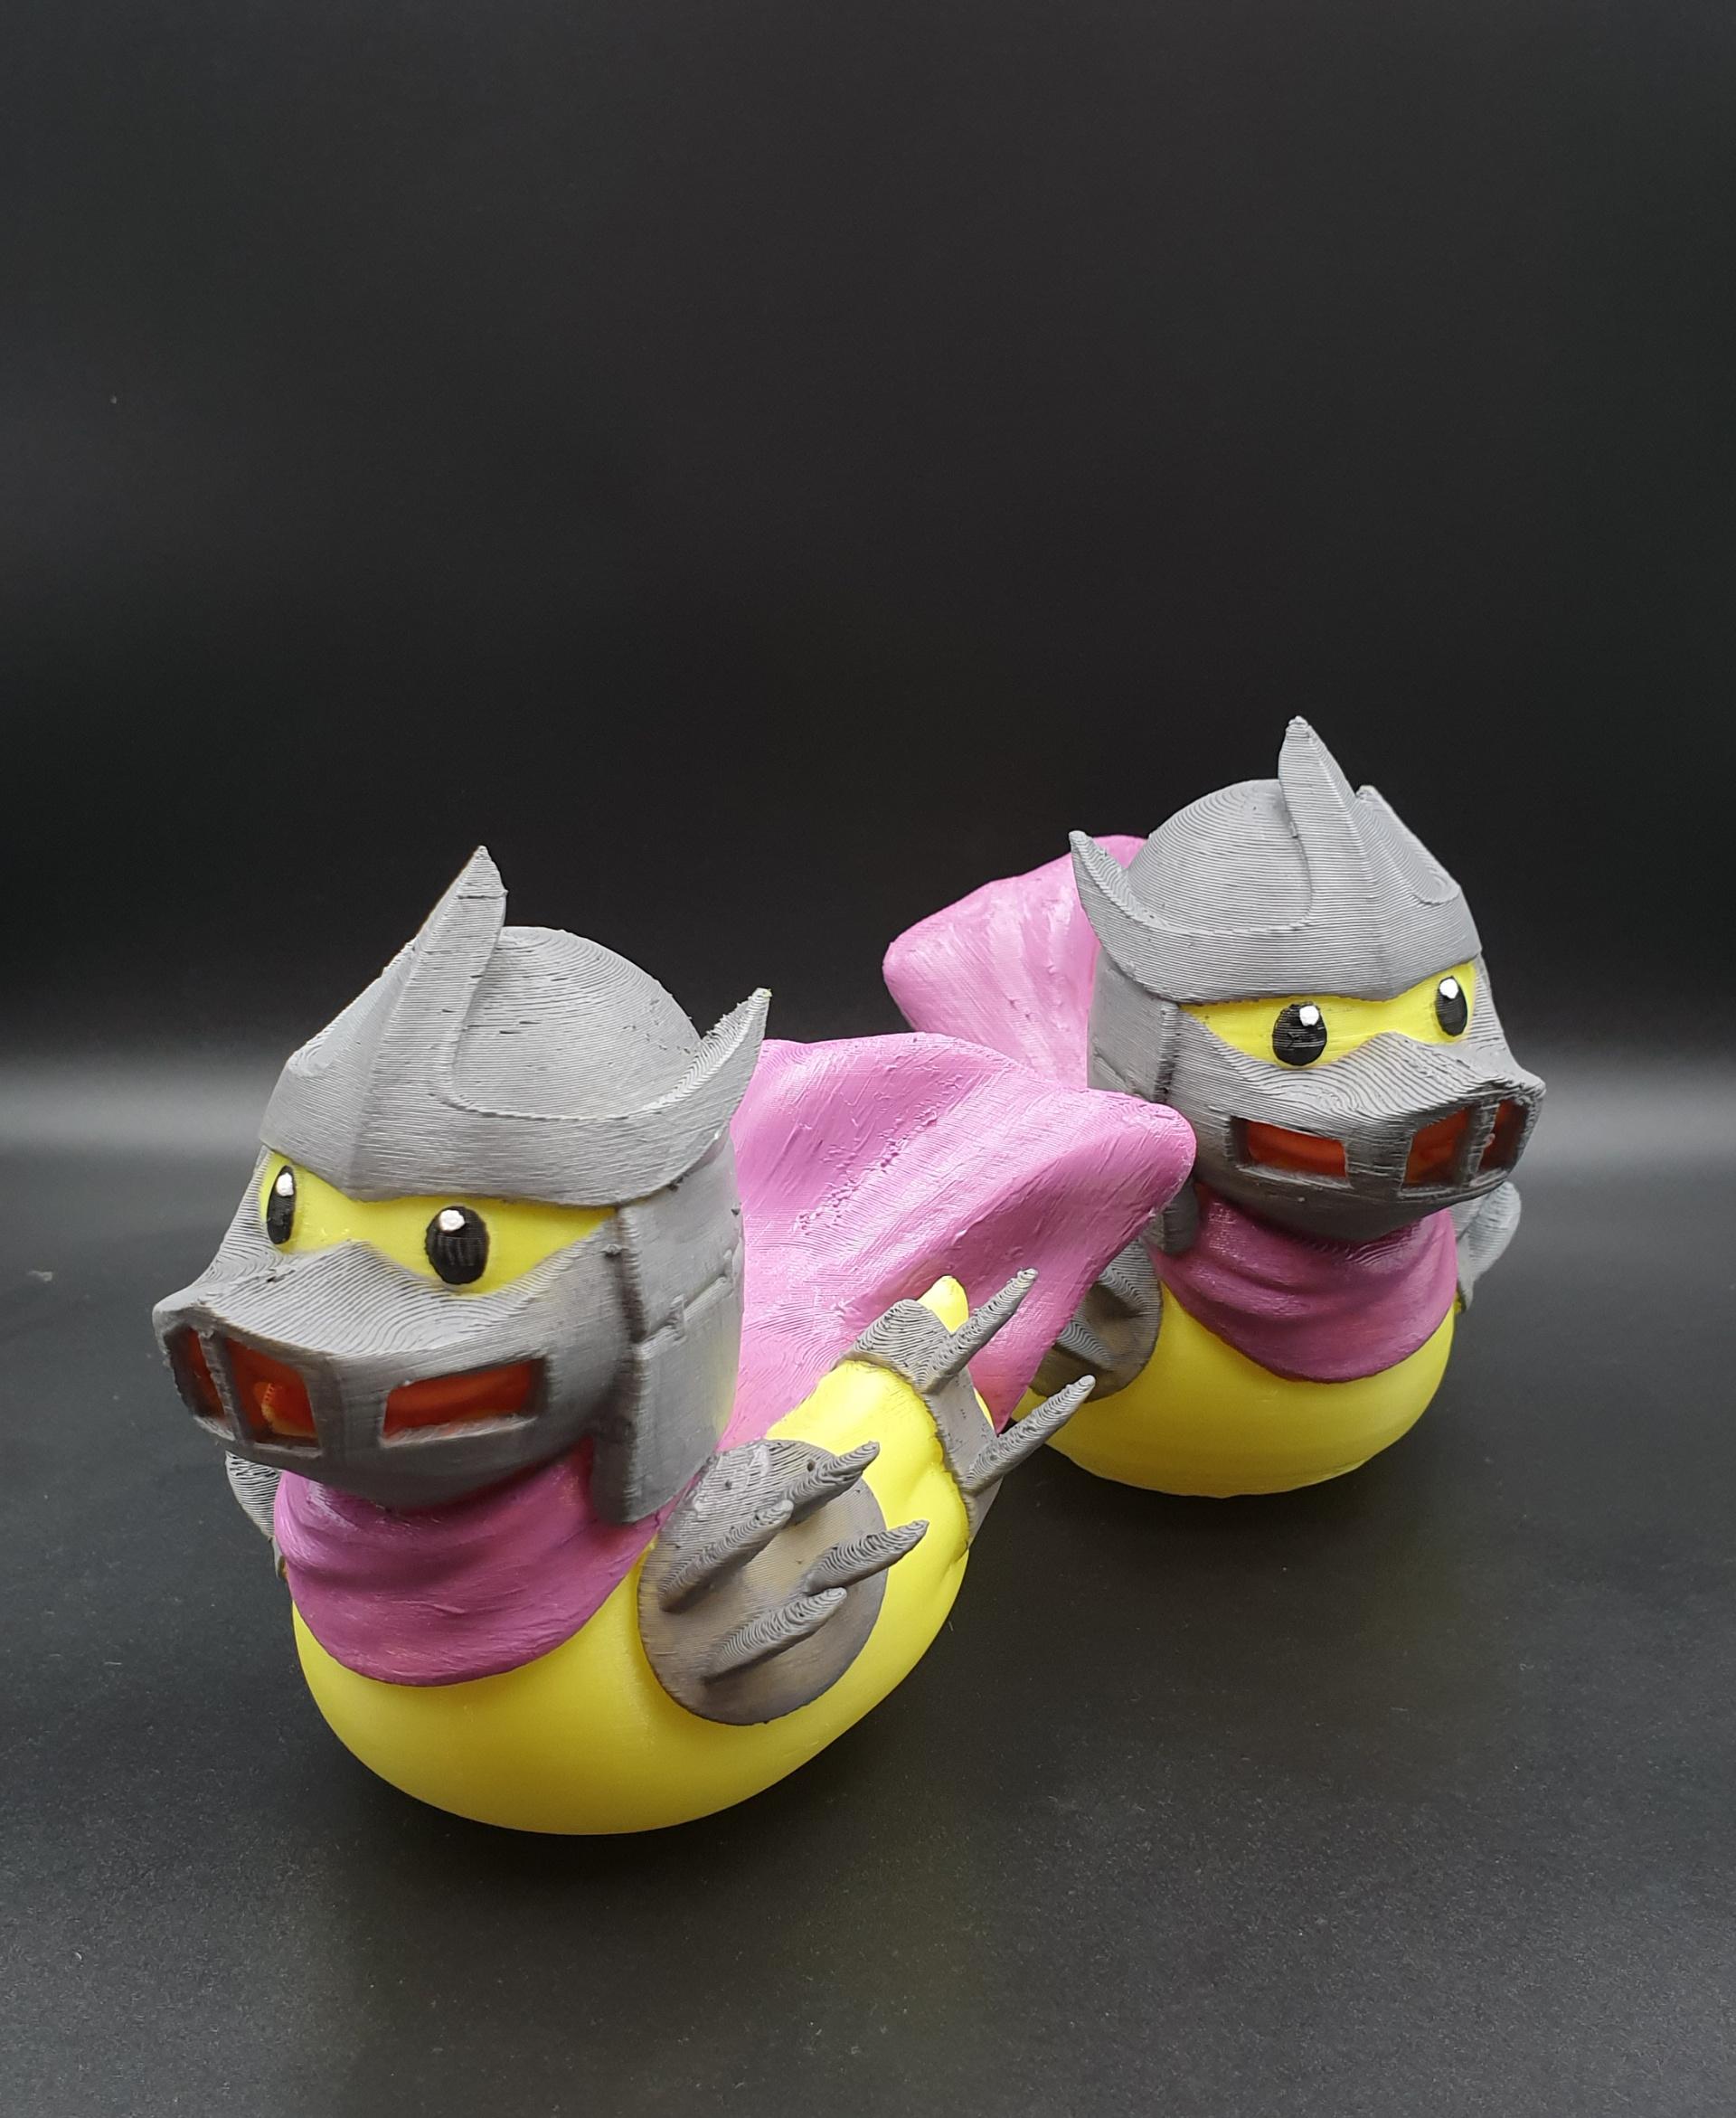 Shredder -TMNT Rubber Duckie - Rubber Duck Shredder - TMNT - 3d model